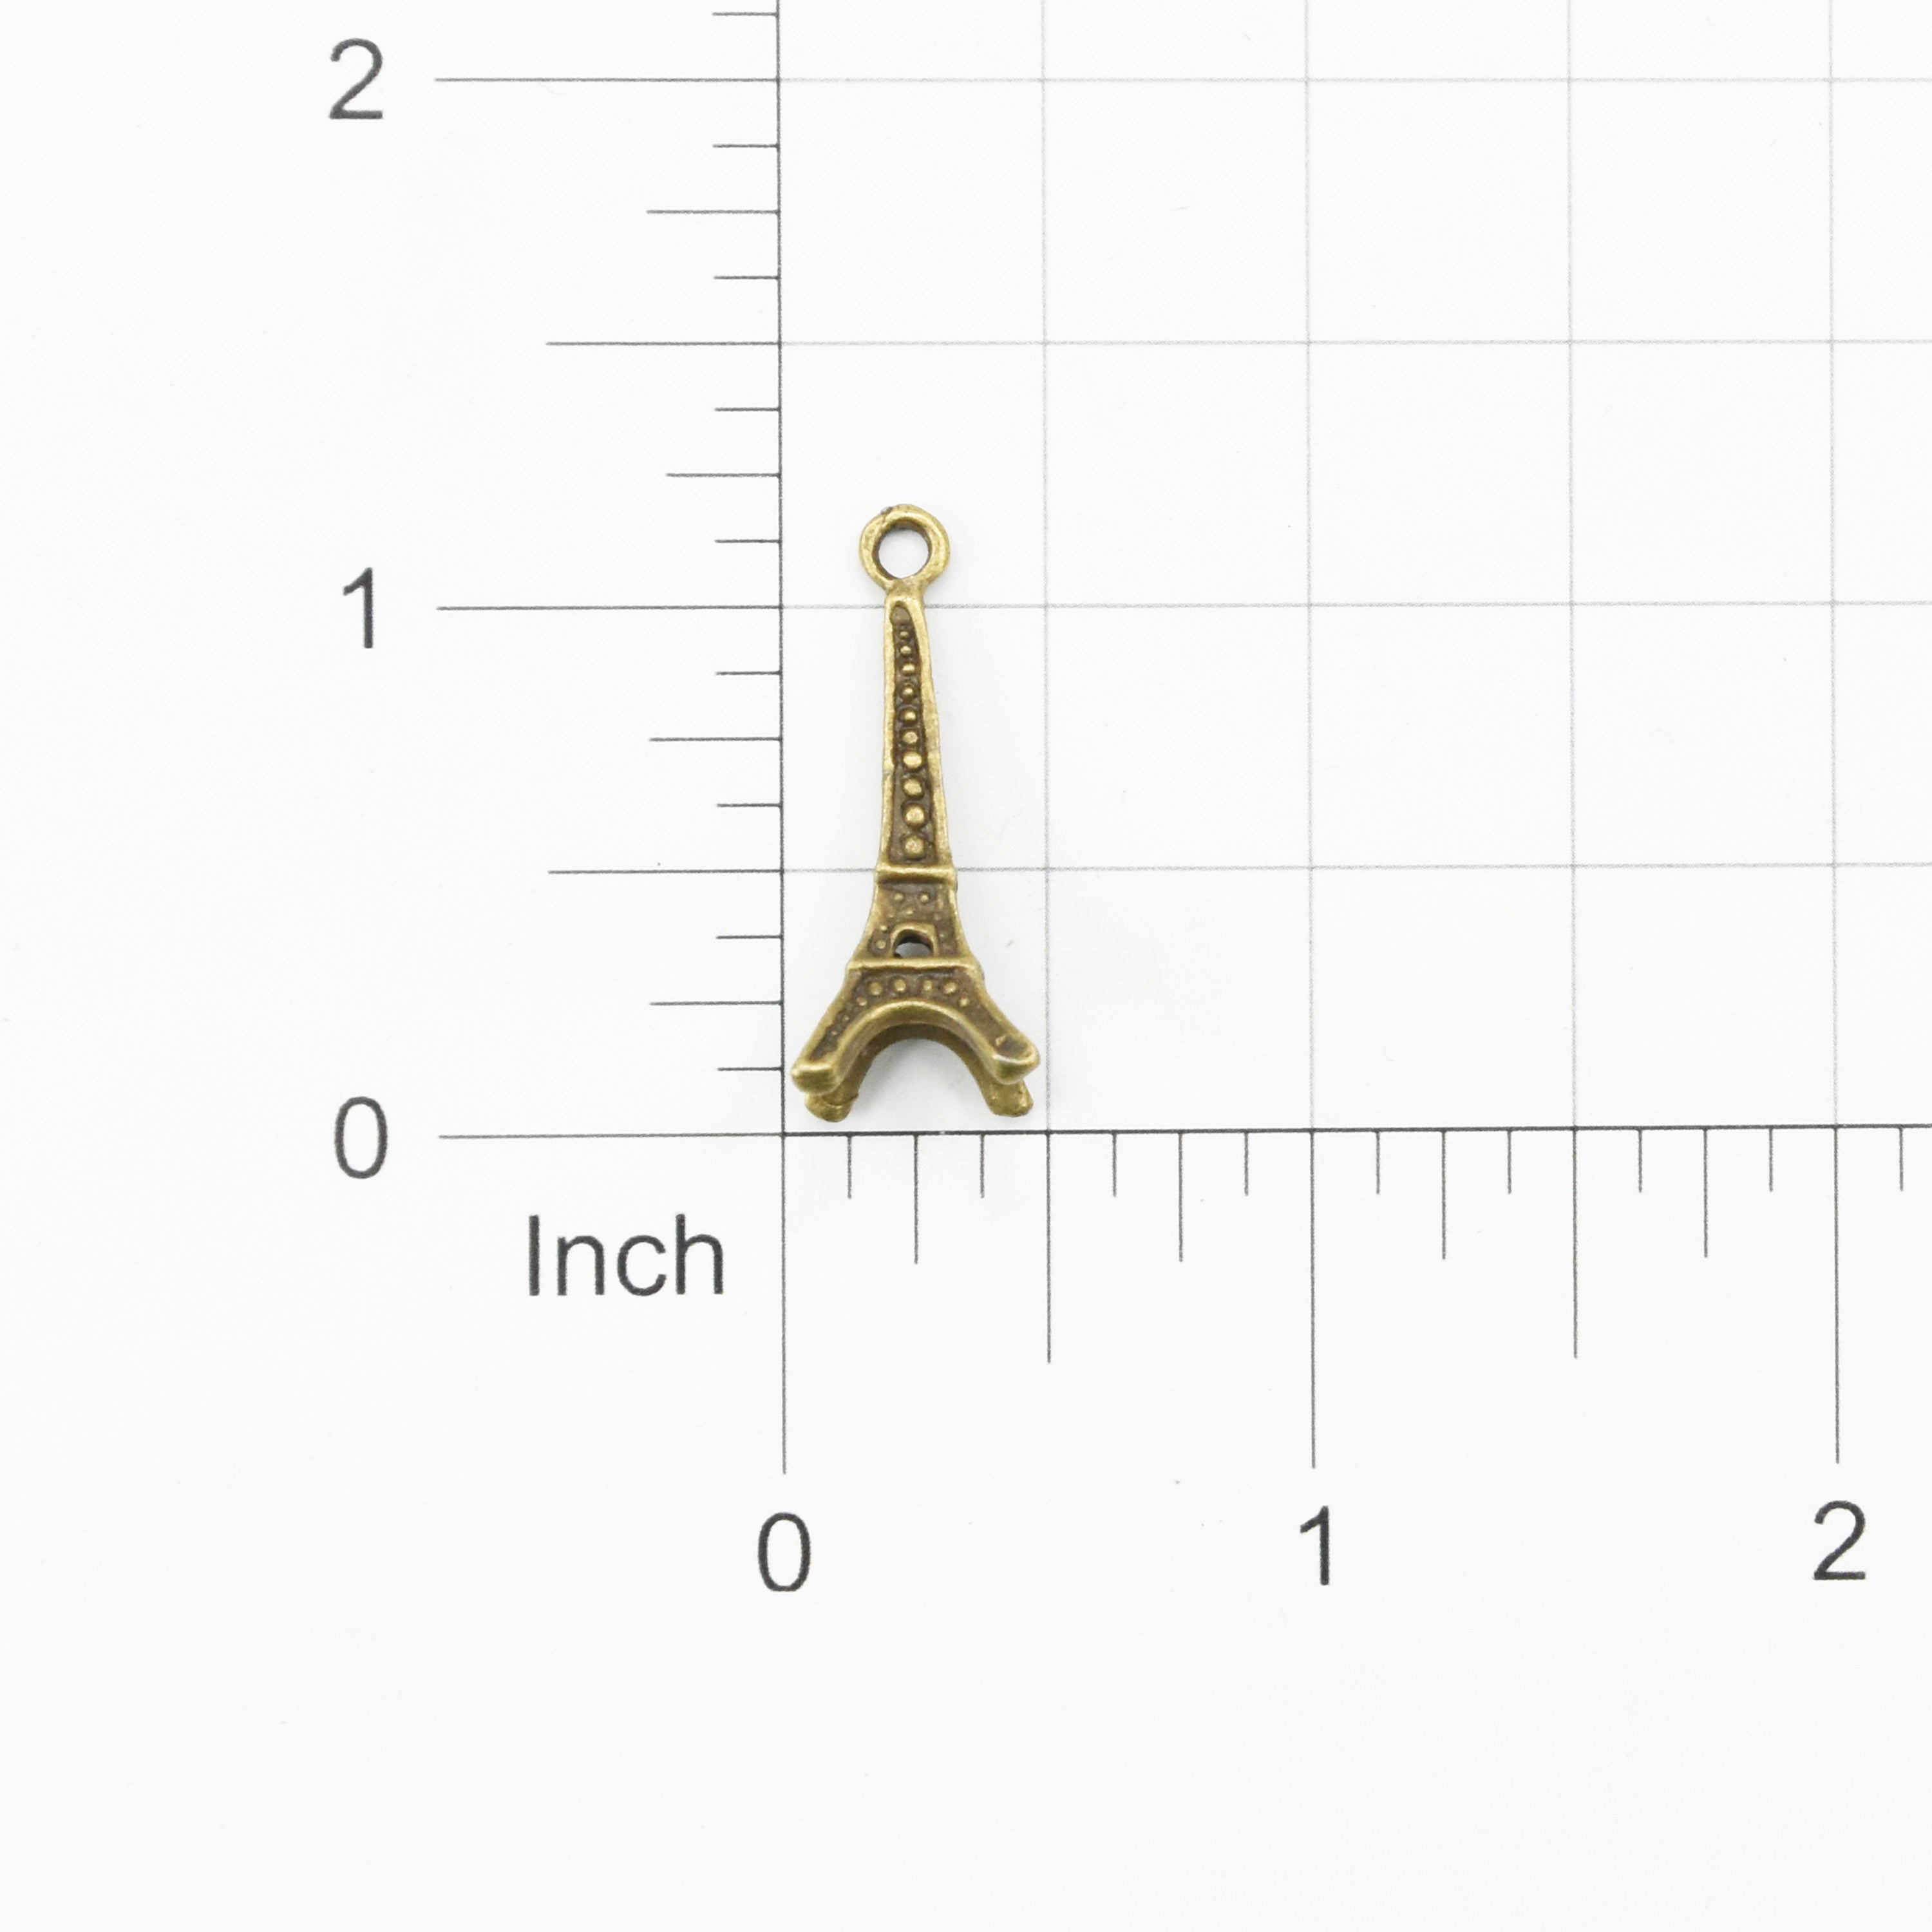 Metal Charms Eiffel Tower 2Pcs Pbci Ib